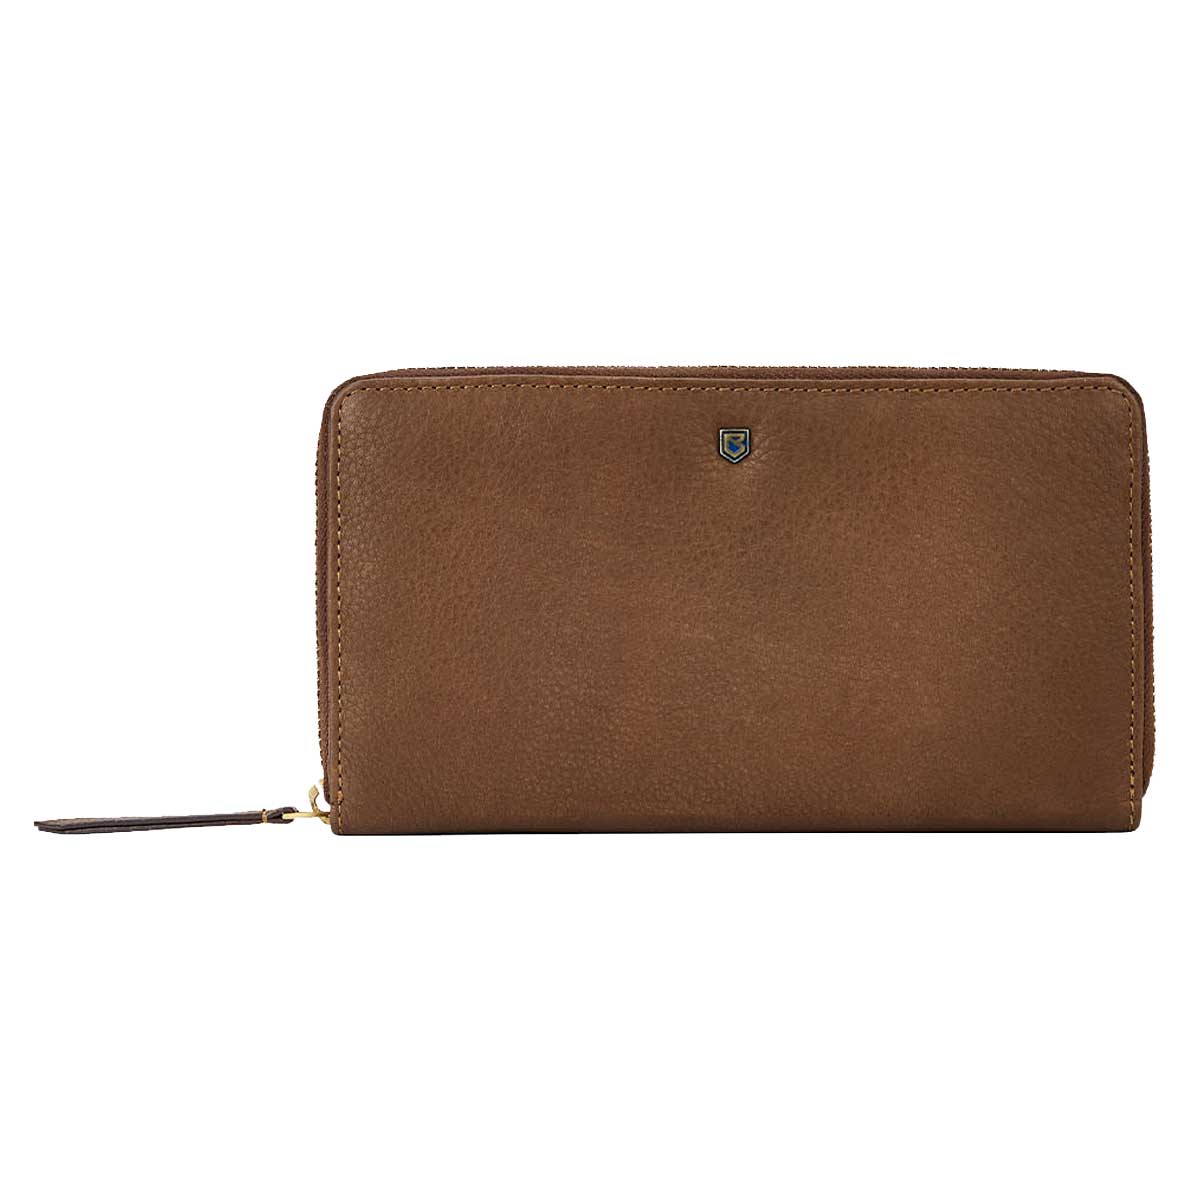 DUBARRY Portlick Women's Leather Wallet - Walnut